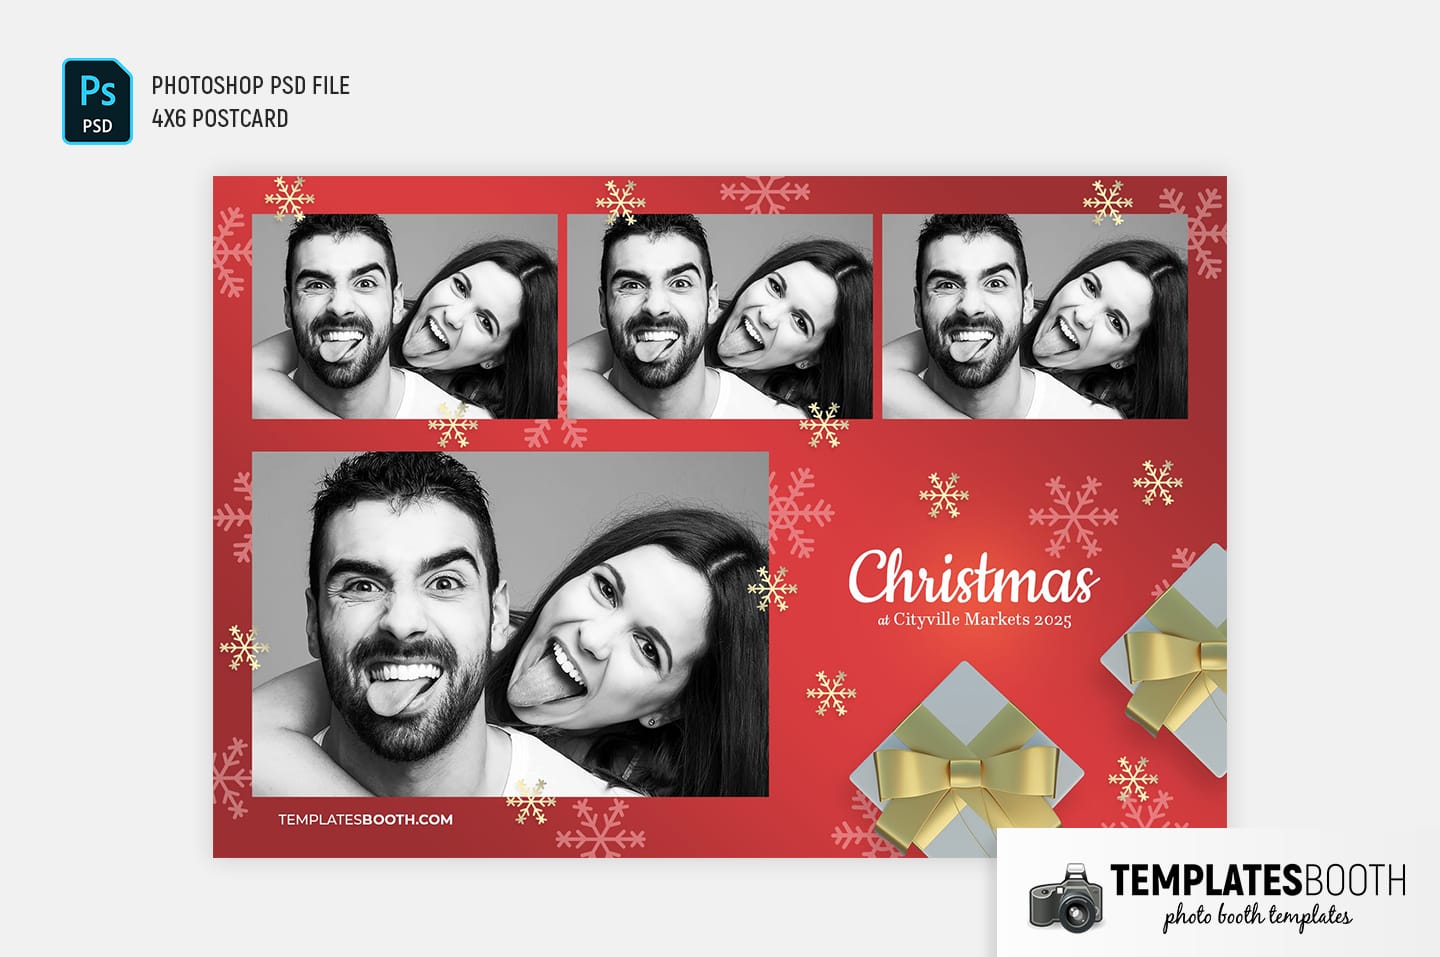 Christmas Gift Photo Booth Template (4x6 postcard)